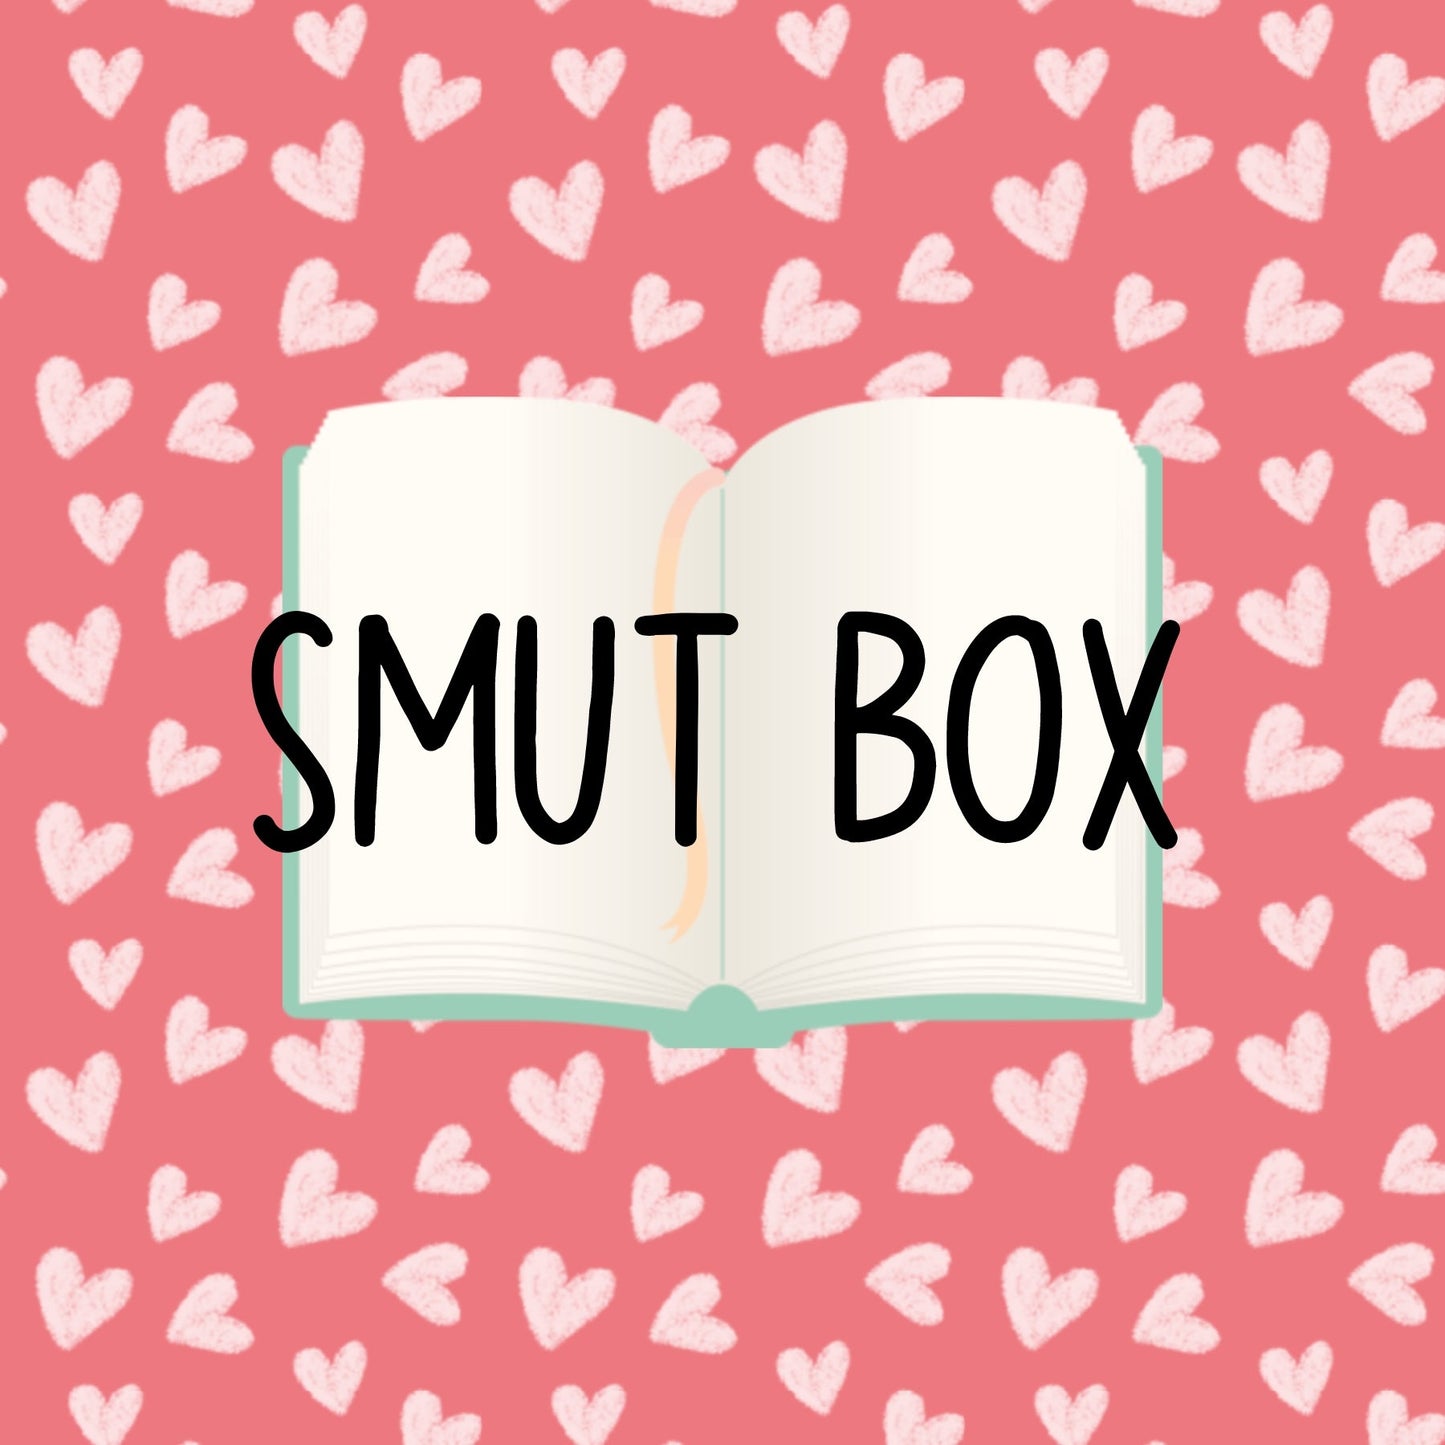 Smut Box